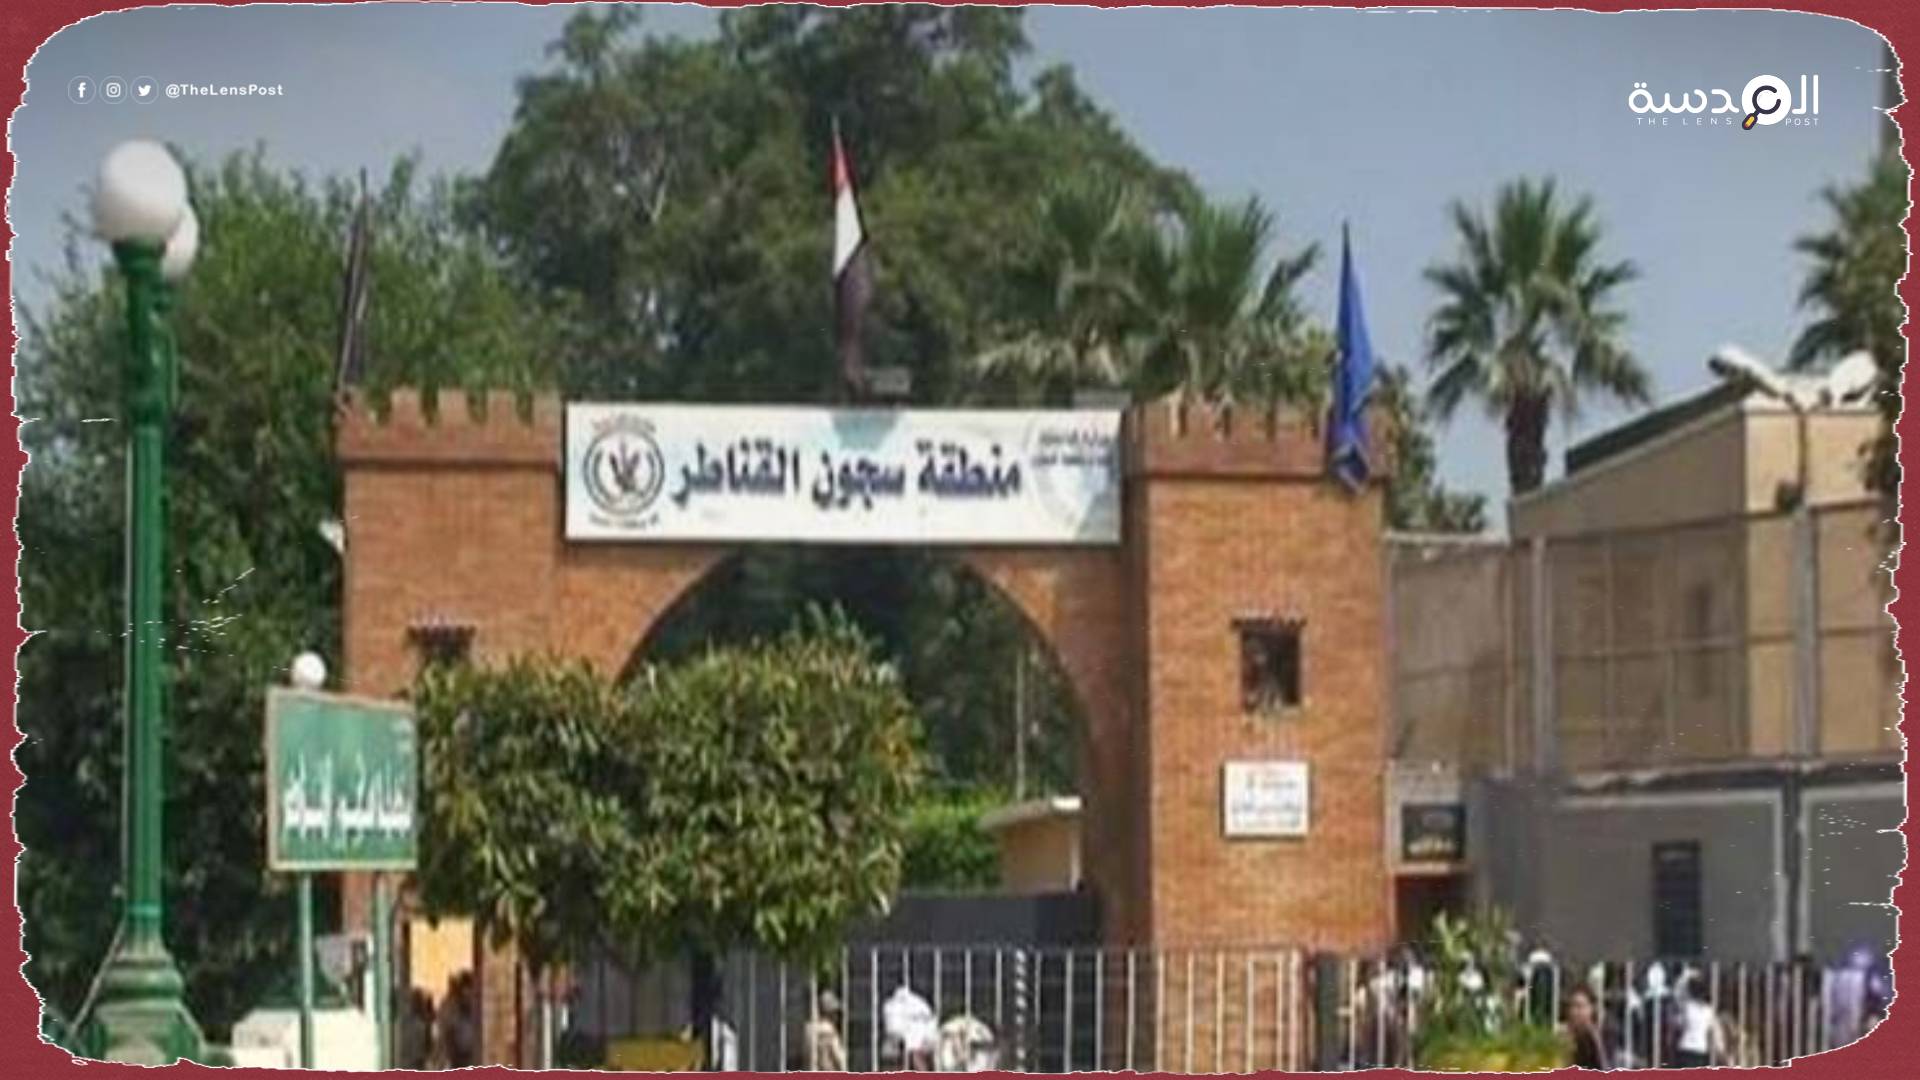 "رحلة عذاب".. تقرير حقوقي يكشف معاناة المعتقلين بسجن القناطر في مصر